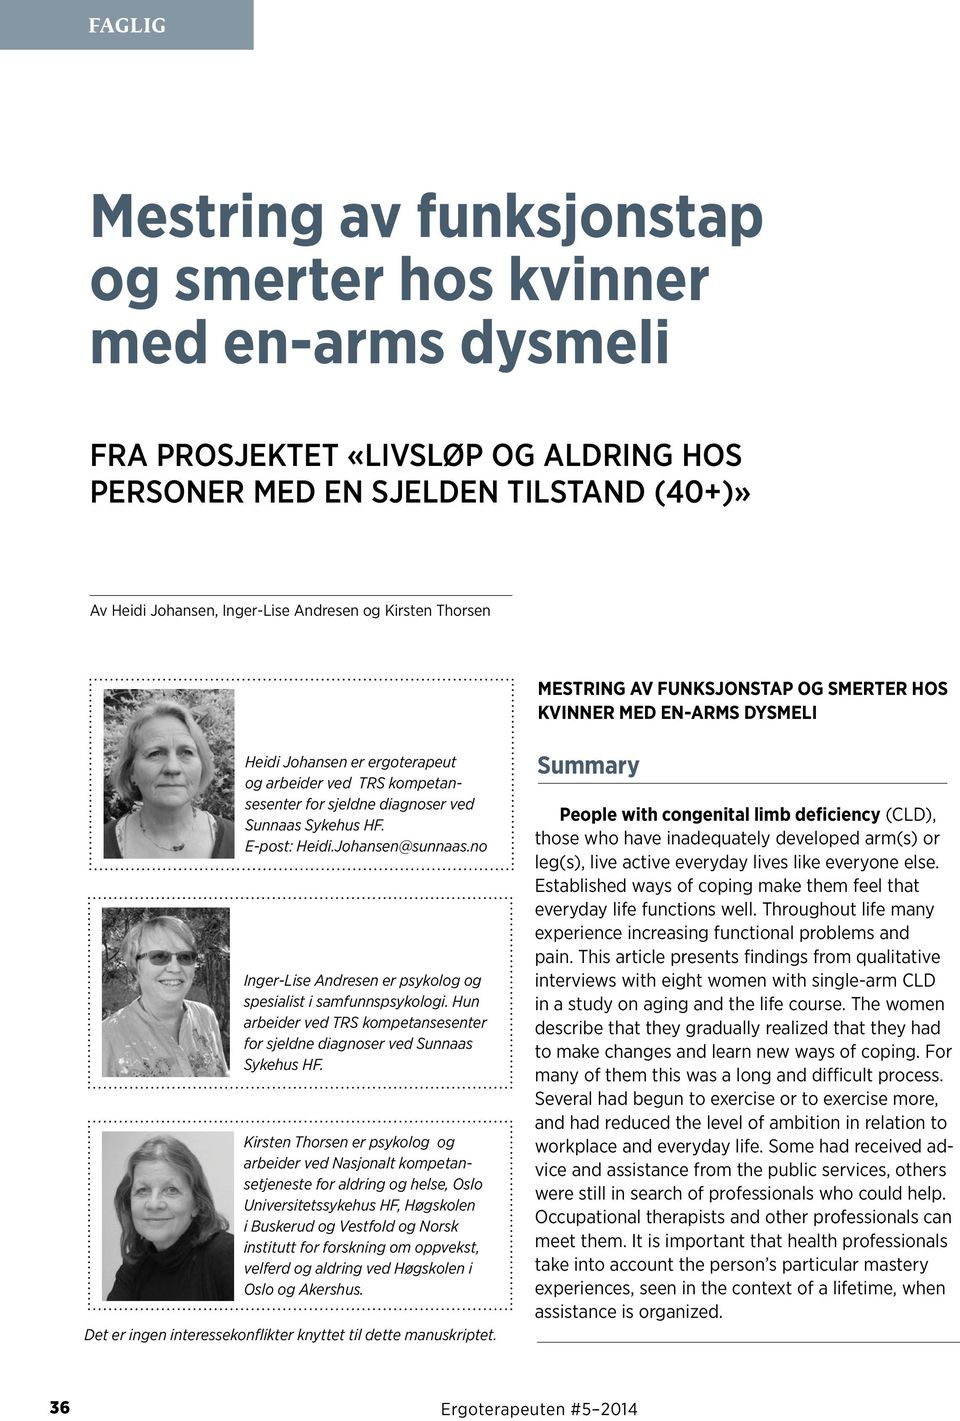 E-post: Heidi.Johansen@sunnaas.no Inger-Lise Andresen er psykolog og spesialist i samfunnspsykologi. Hun arbeider ved TRS kompetansesenter for sjeldne diagnoser ved Sunnaas Sykehus HF.